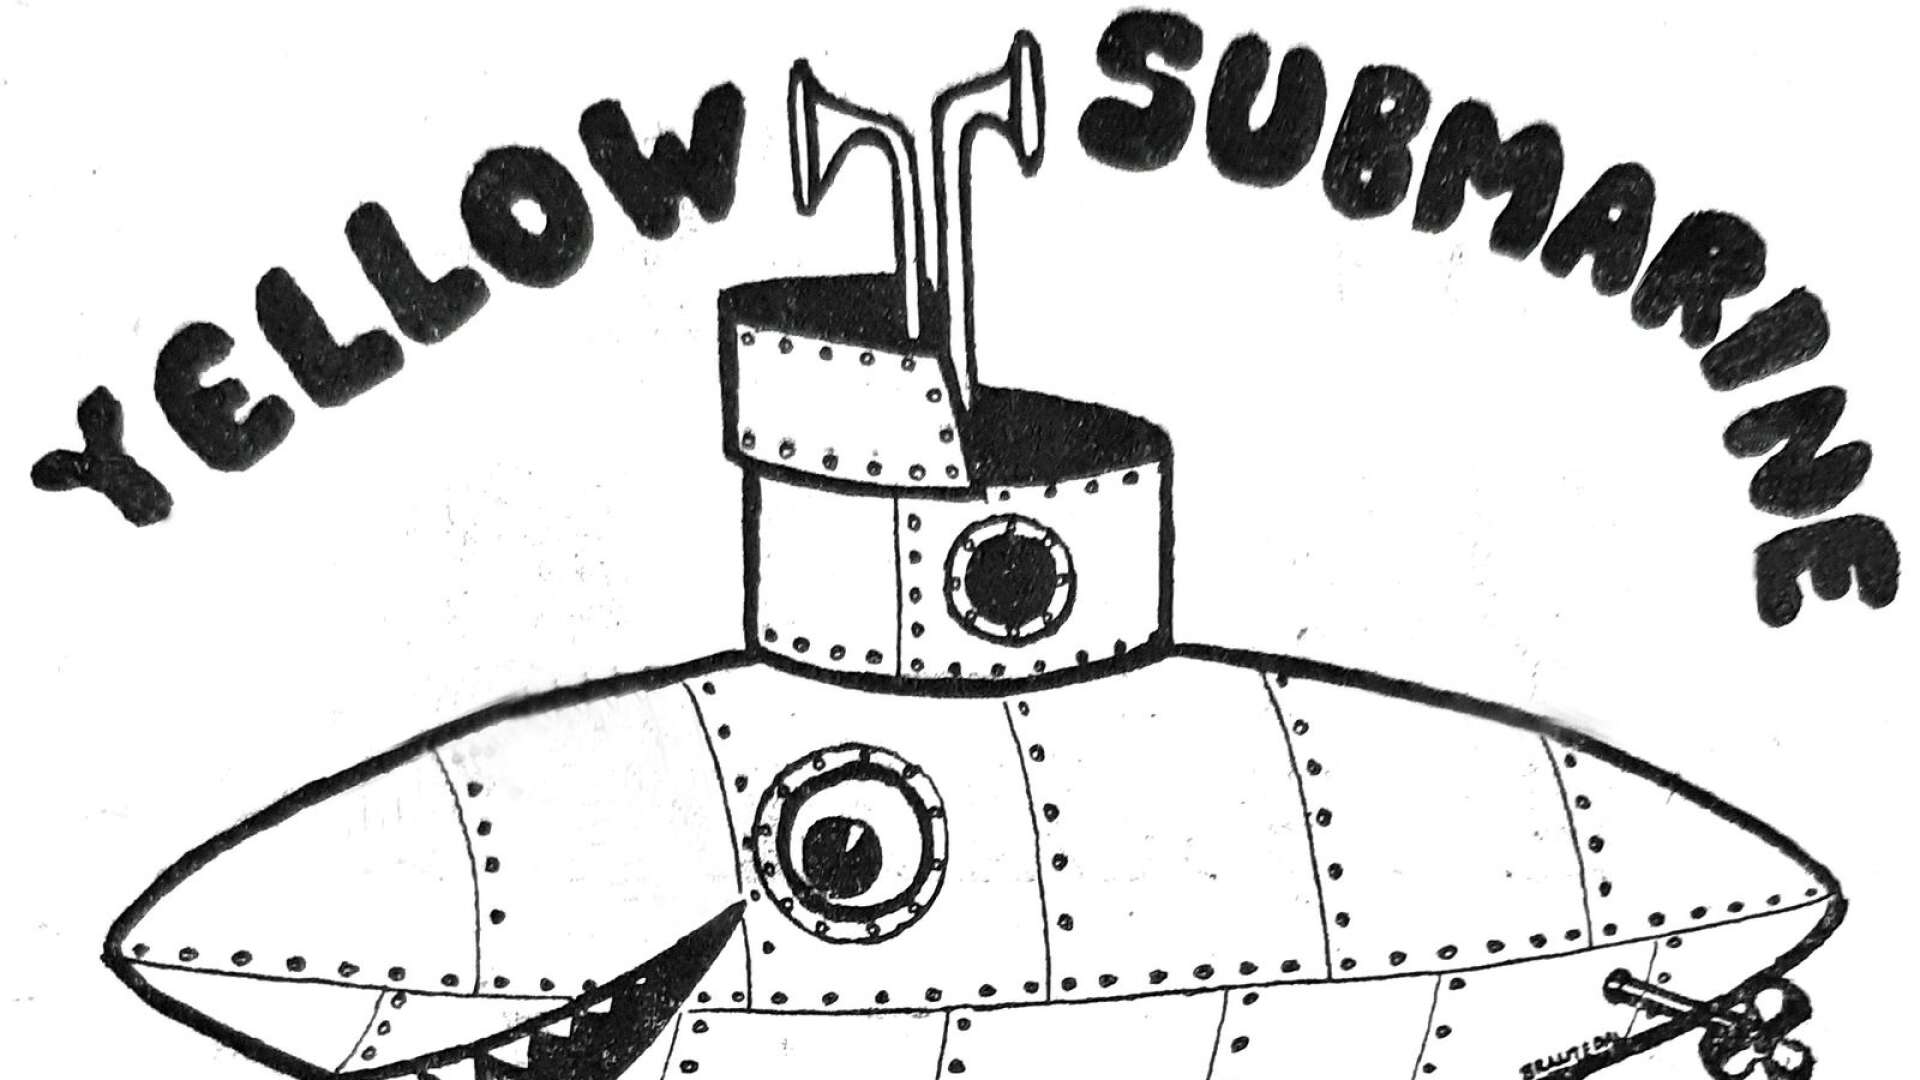 Ungdomsklubben Yellow Submarine hade en mycket speciell logotype. Studerar man den noga upptäcker man att den faktiskt är signerad av upphovsmannen som var Ewert Brantedal.